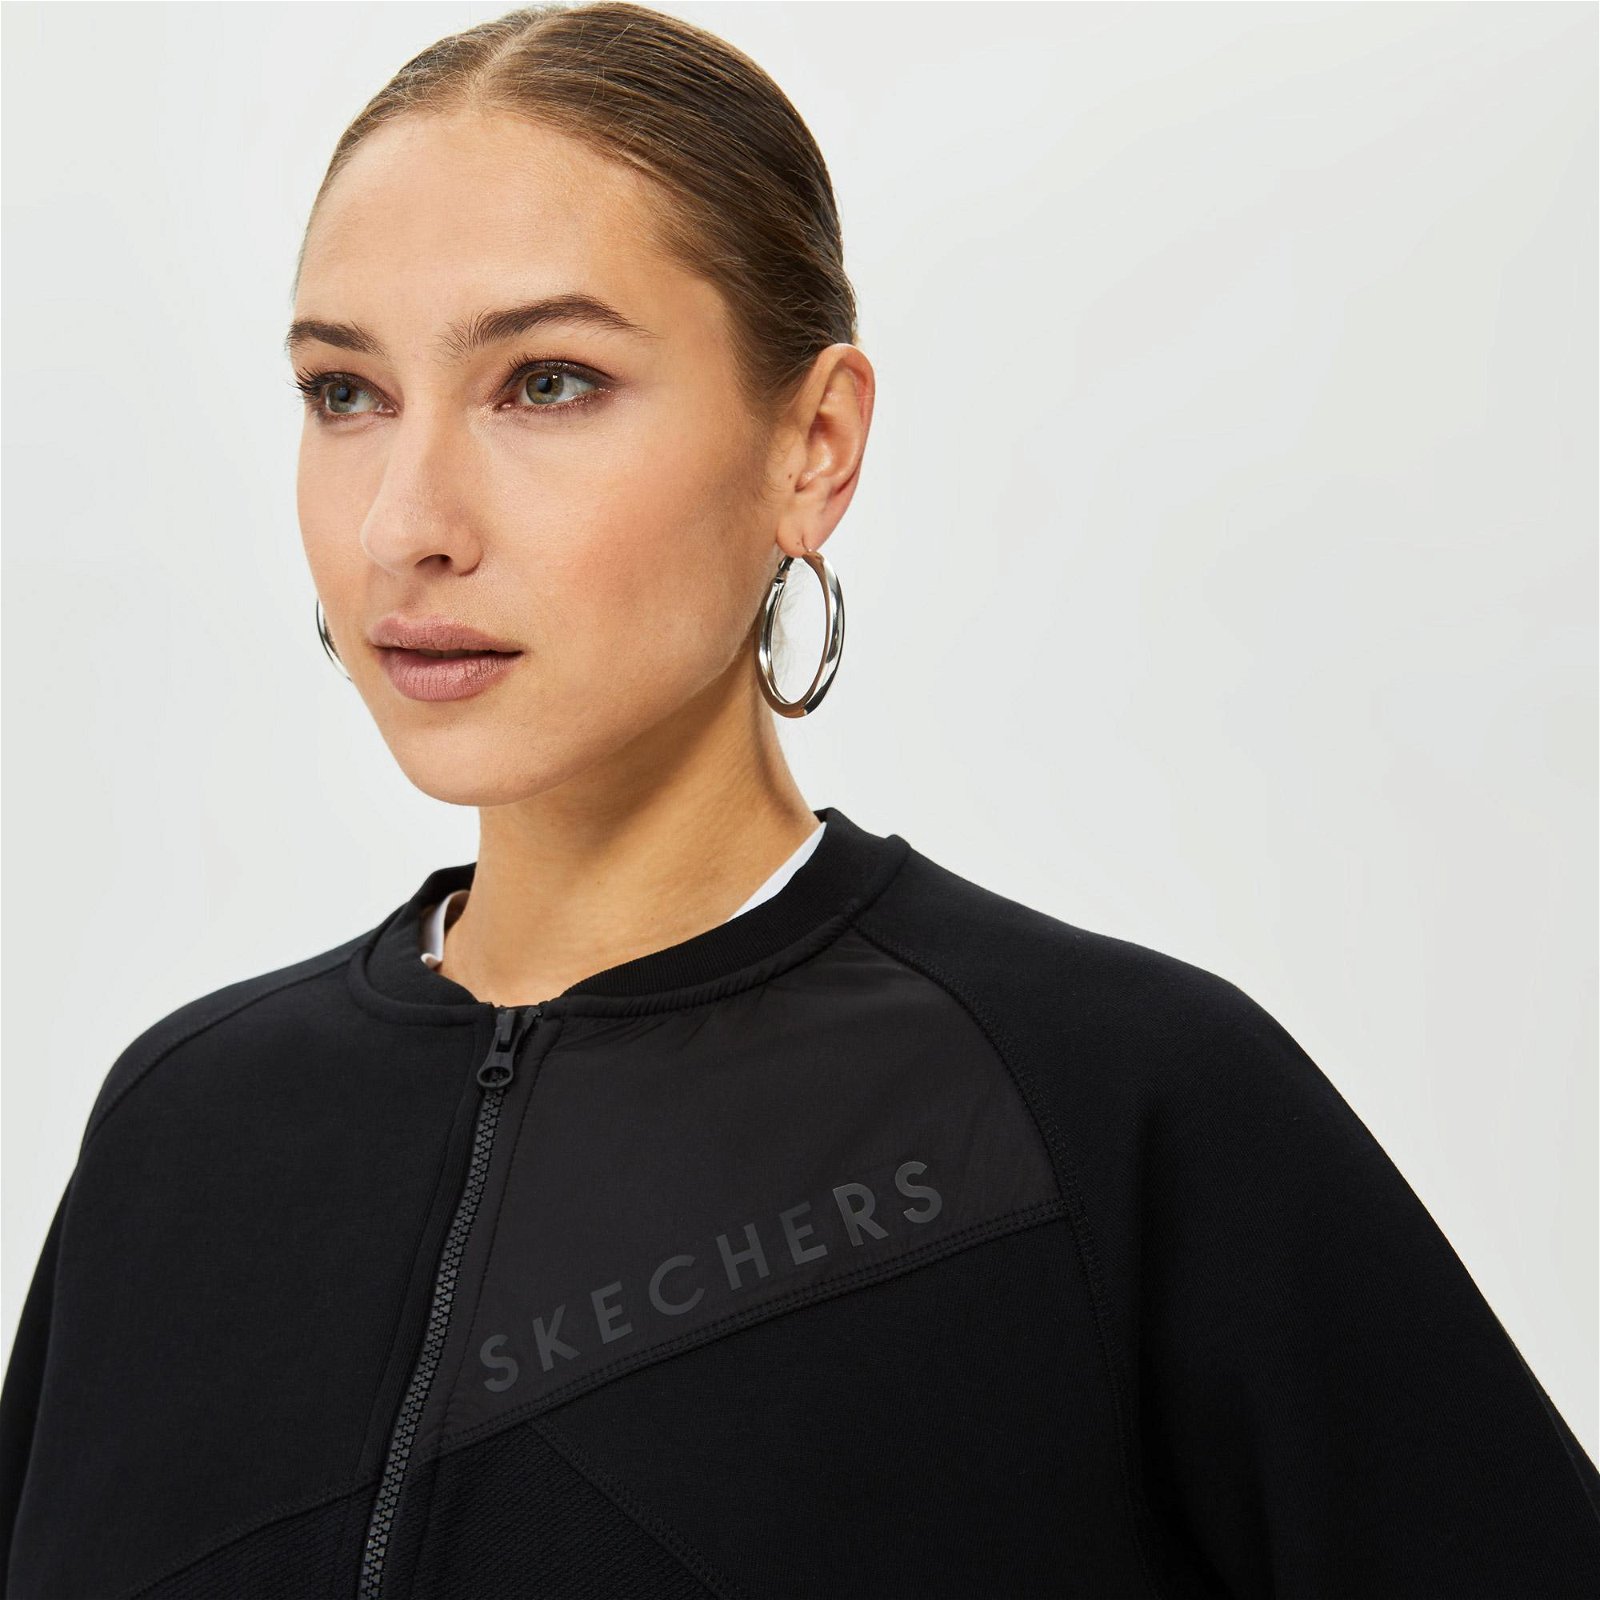 Skechers Capsule Coll Colorblock Bomber Kadın Siyah Ceket